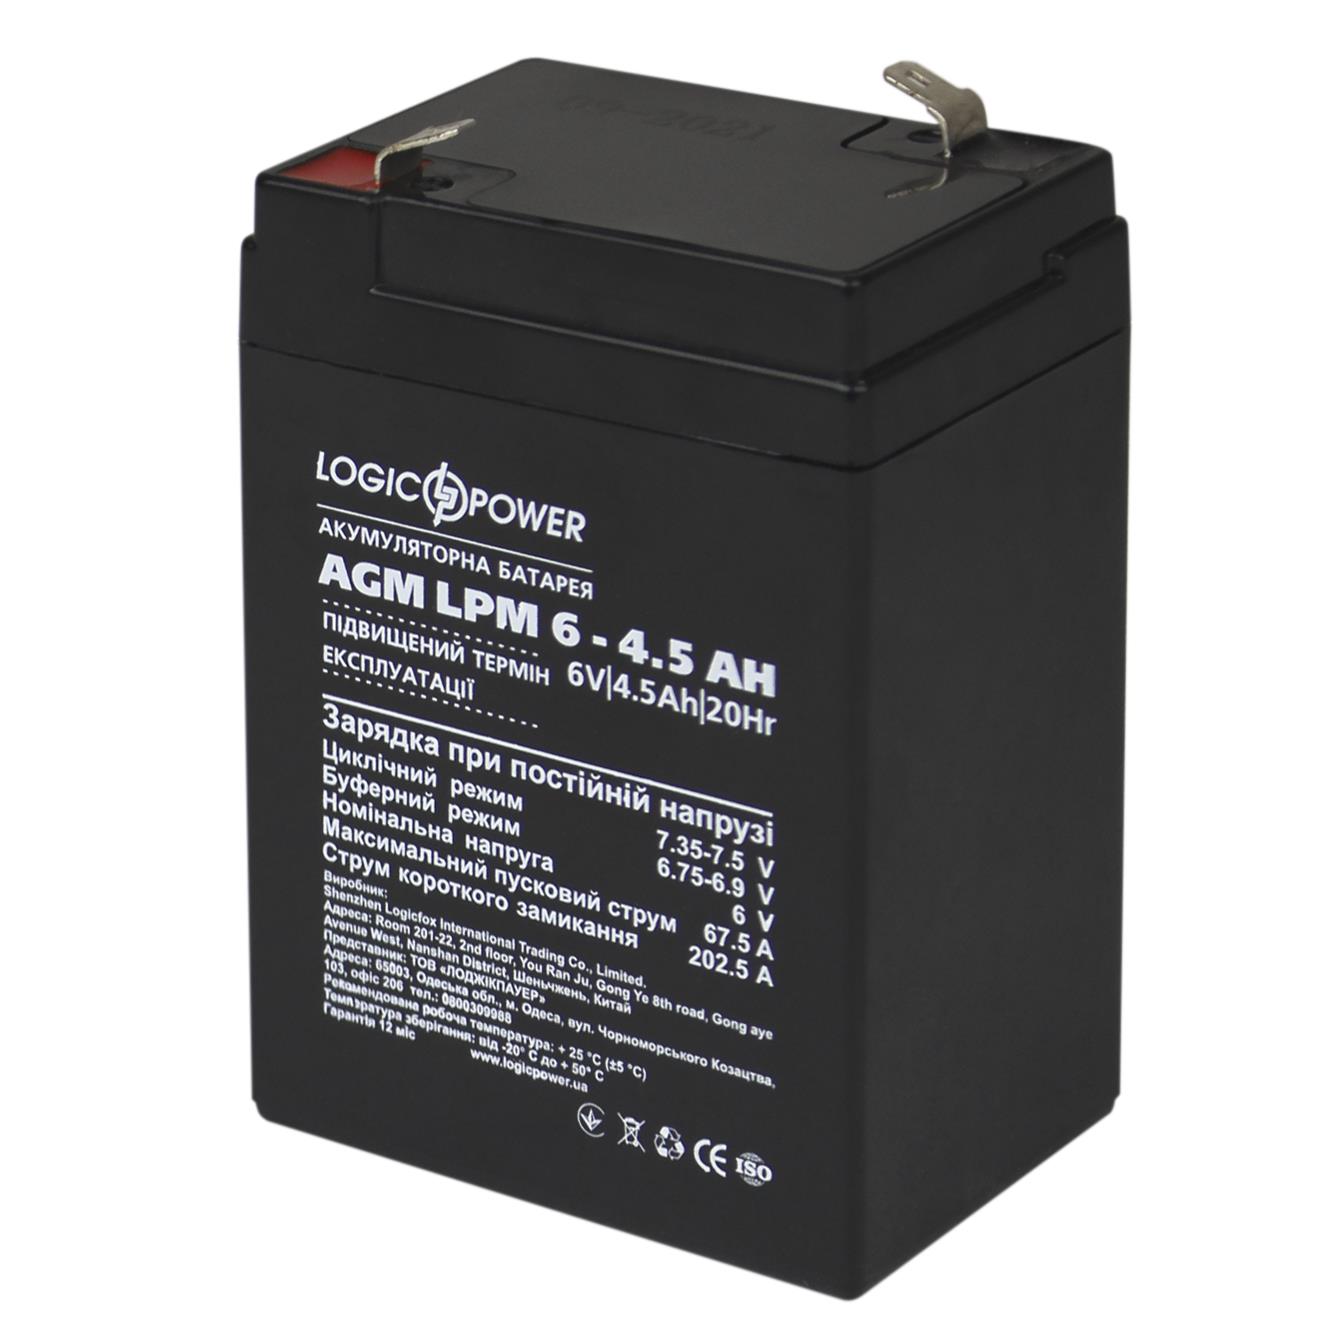 Акумулятор свинцево-кислотний LogicPower AGM LPM 6V - 4.5 Ah (3860)